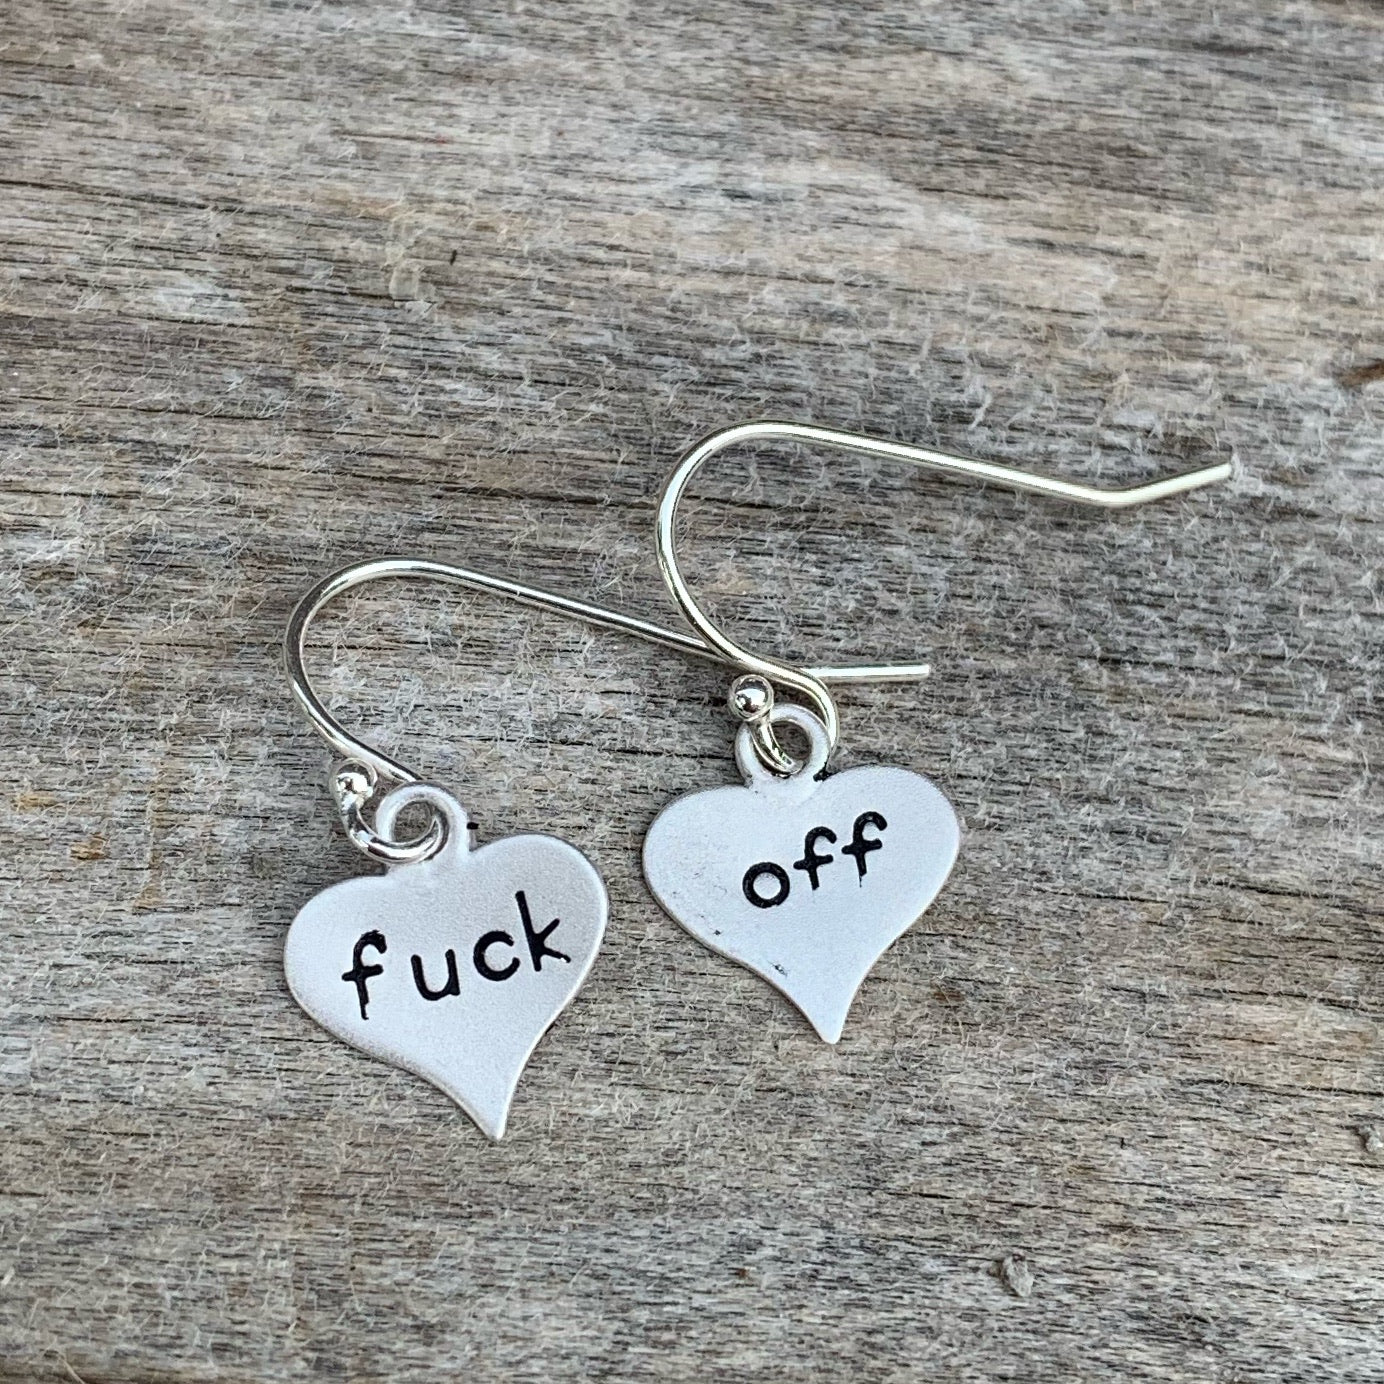 Pair of sterling silver earrings - heart shape- “fuck off”